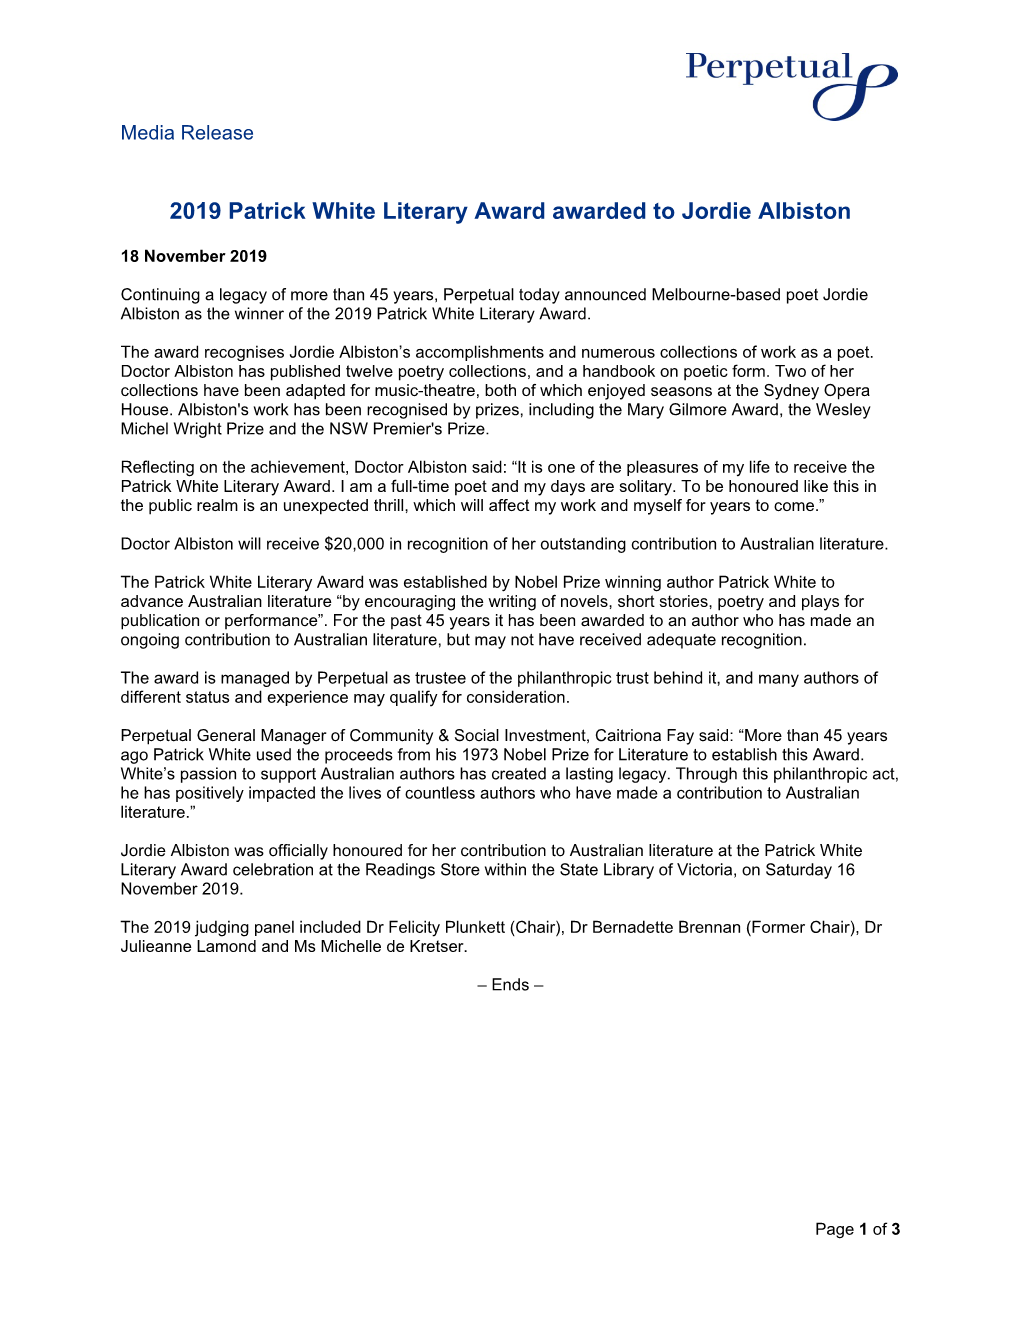 2019 Patrick White Literary Award Awarded to Jordie Albiston